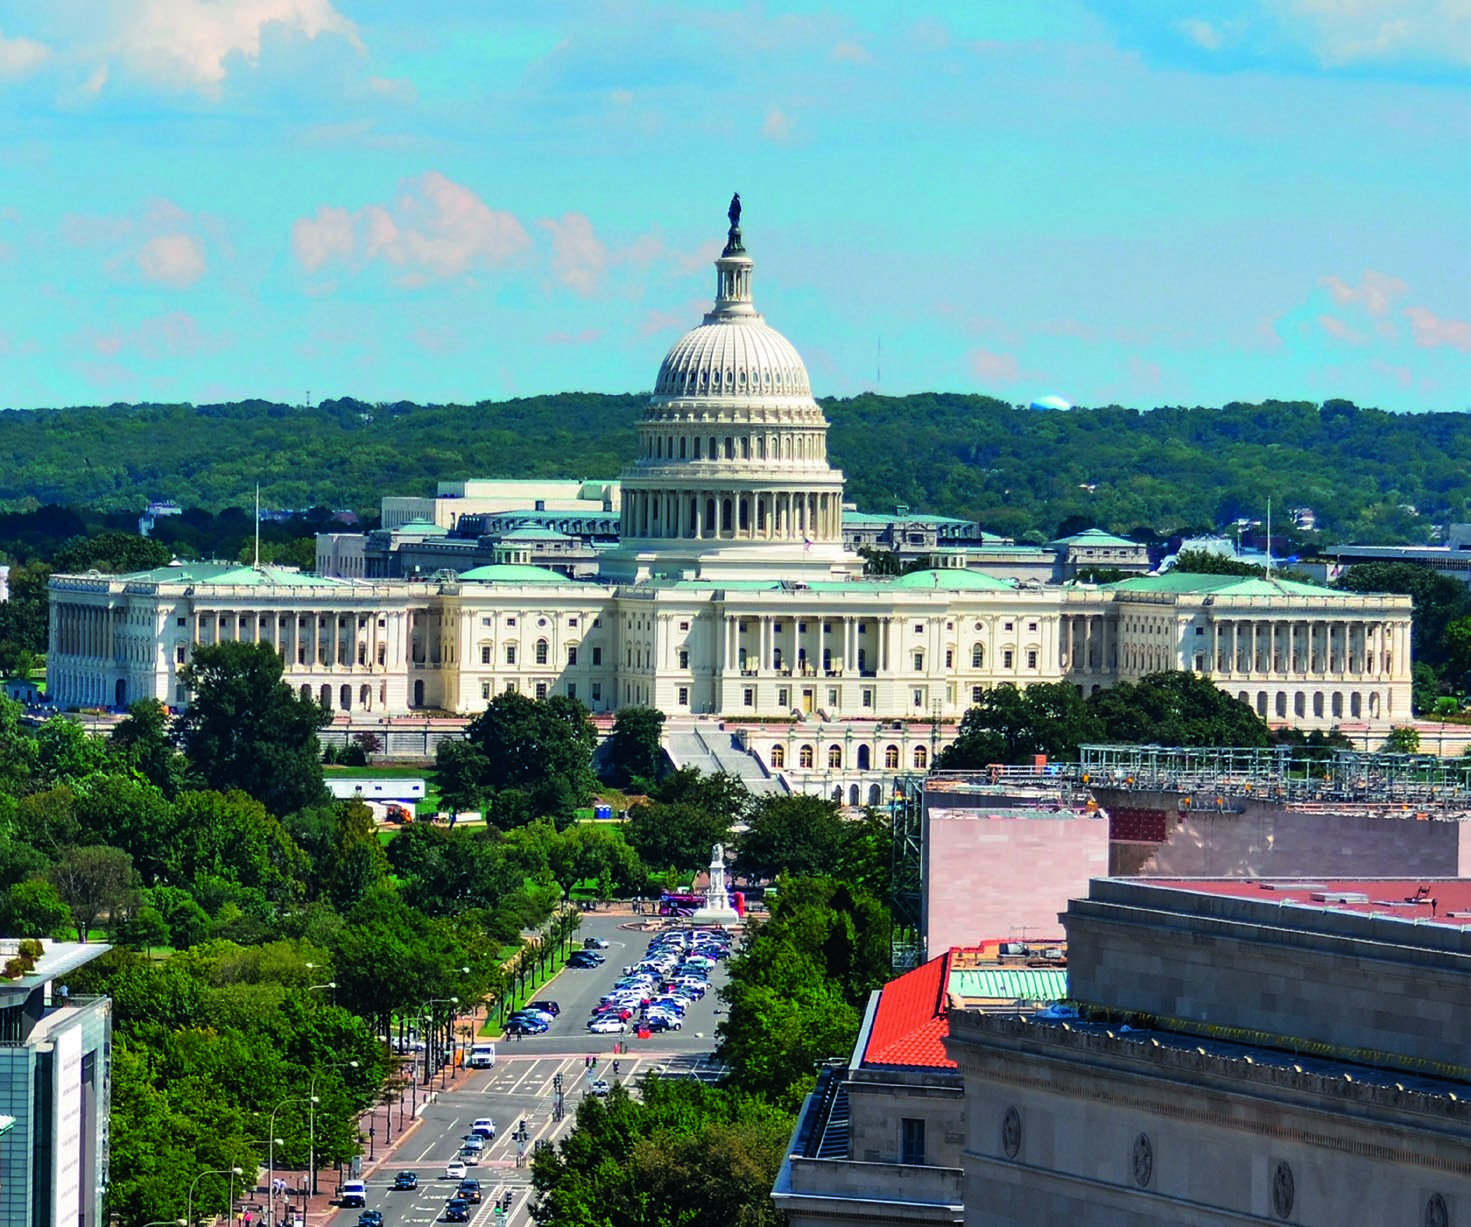 Az Egyesült Államok Kongresszusának székháza napjainkban Az Egyesült Államok továbbra is a nemzet kormányának működési helye, továbbá a kongresszus két házának 435 képviselője és 100 szenátora is az